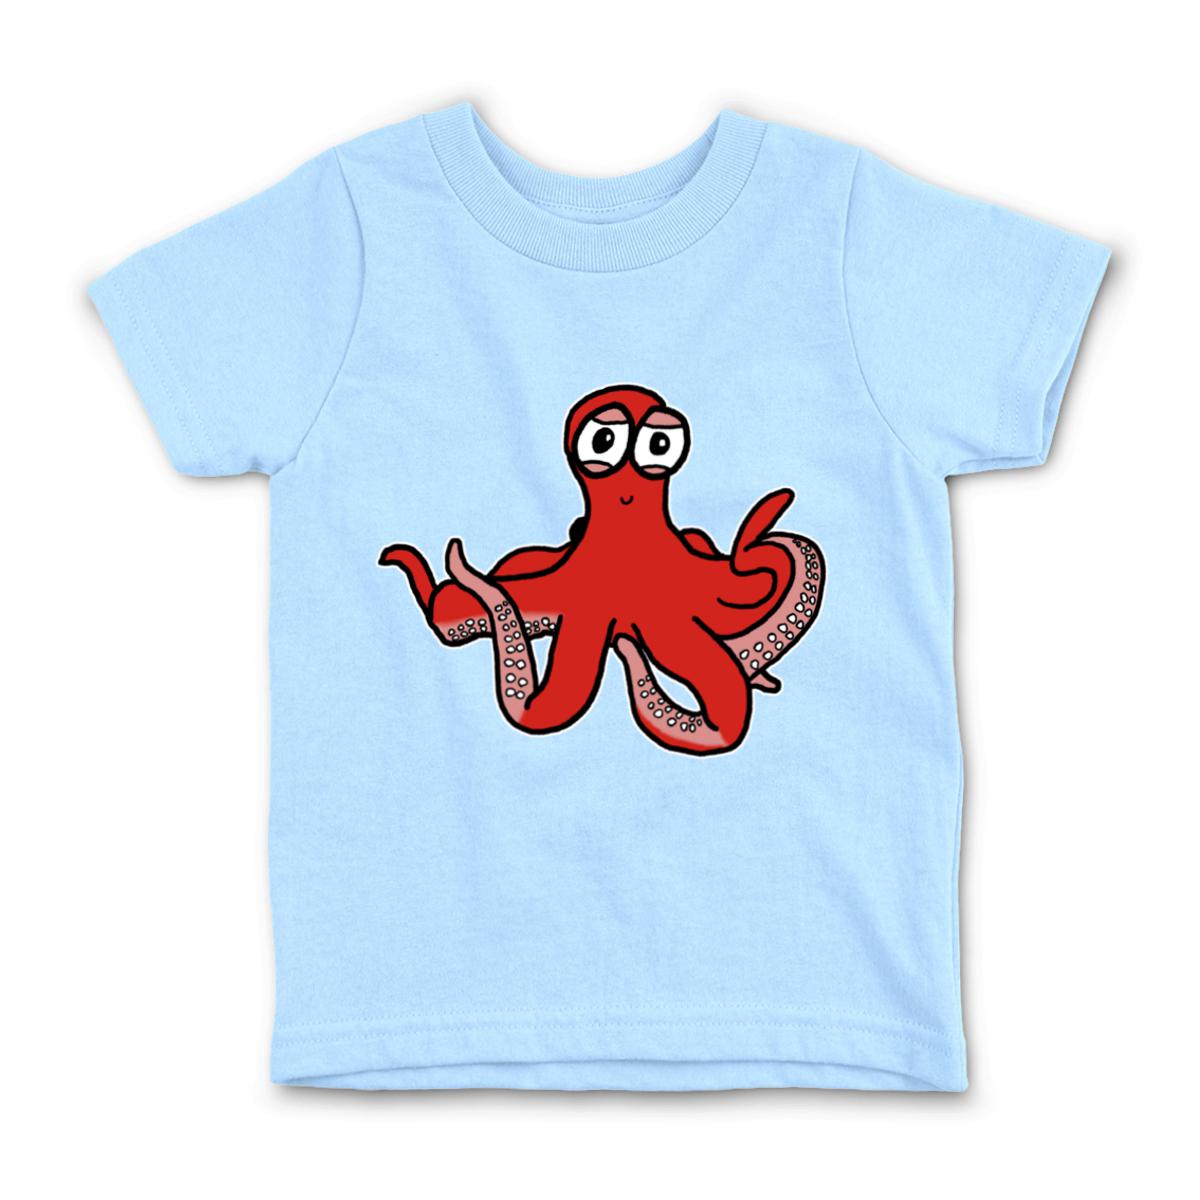 Octopus Kid's Tee Large light-blue